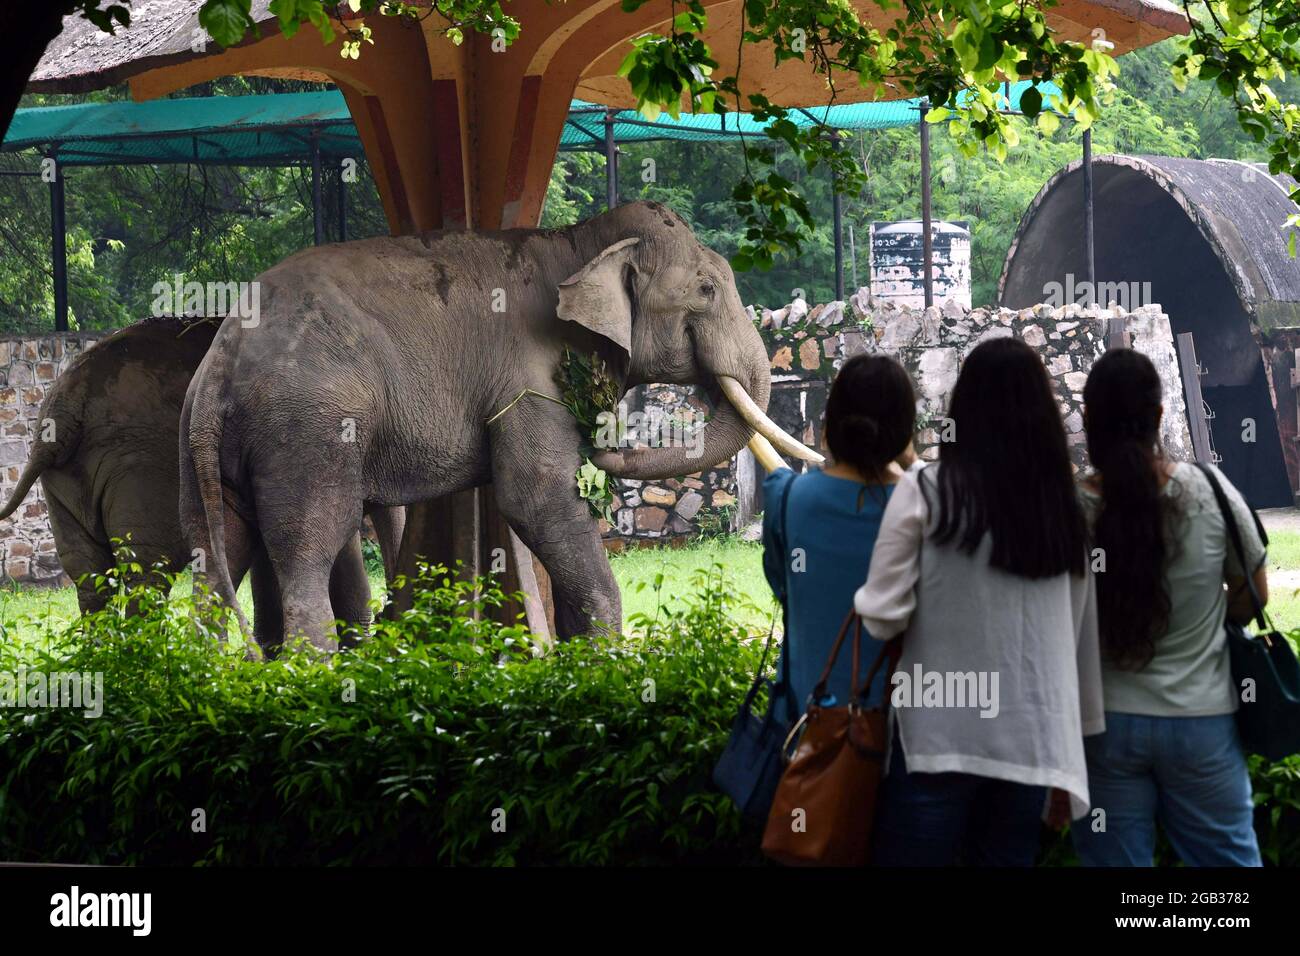 New Delhi. 1er août 2021. Les visiteurs se tiennent devant l'enclos à éléphants au zoo de Delhi en Inde, le 1er août 2021. Le zoo de Delhi a rouvert ses portes au public et a fourni un service de réservation de billets en ligne aux visiteurs. Credit: Partha Sarkar/Xinhua/Alamy Live News Banque D'Images